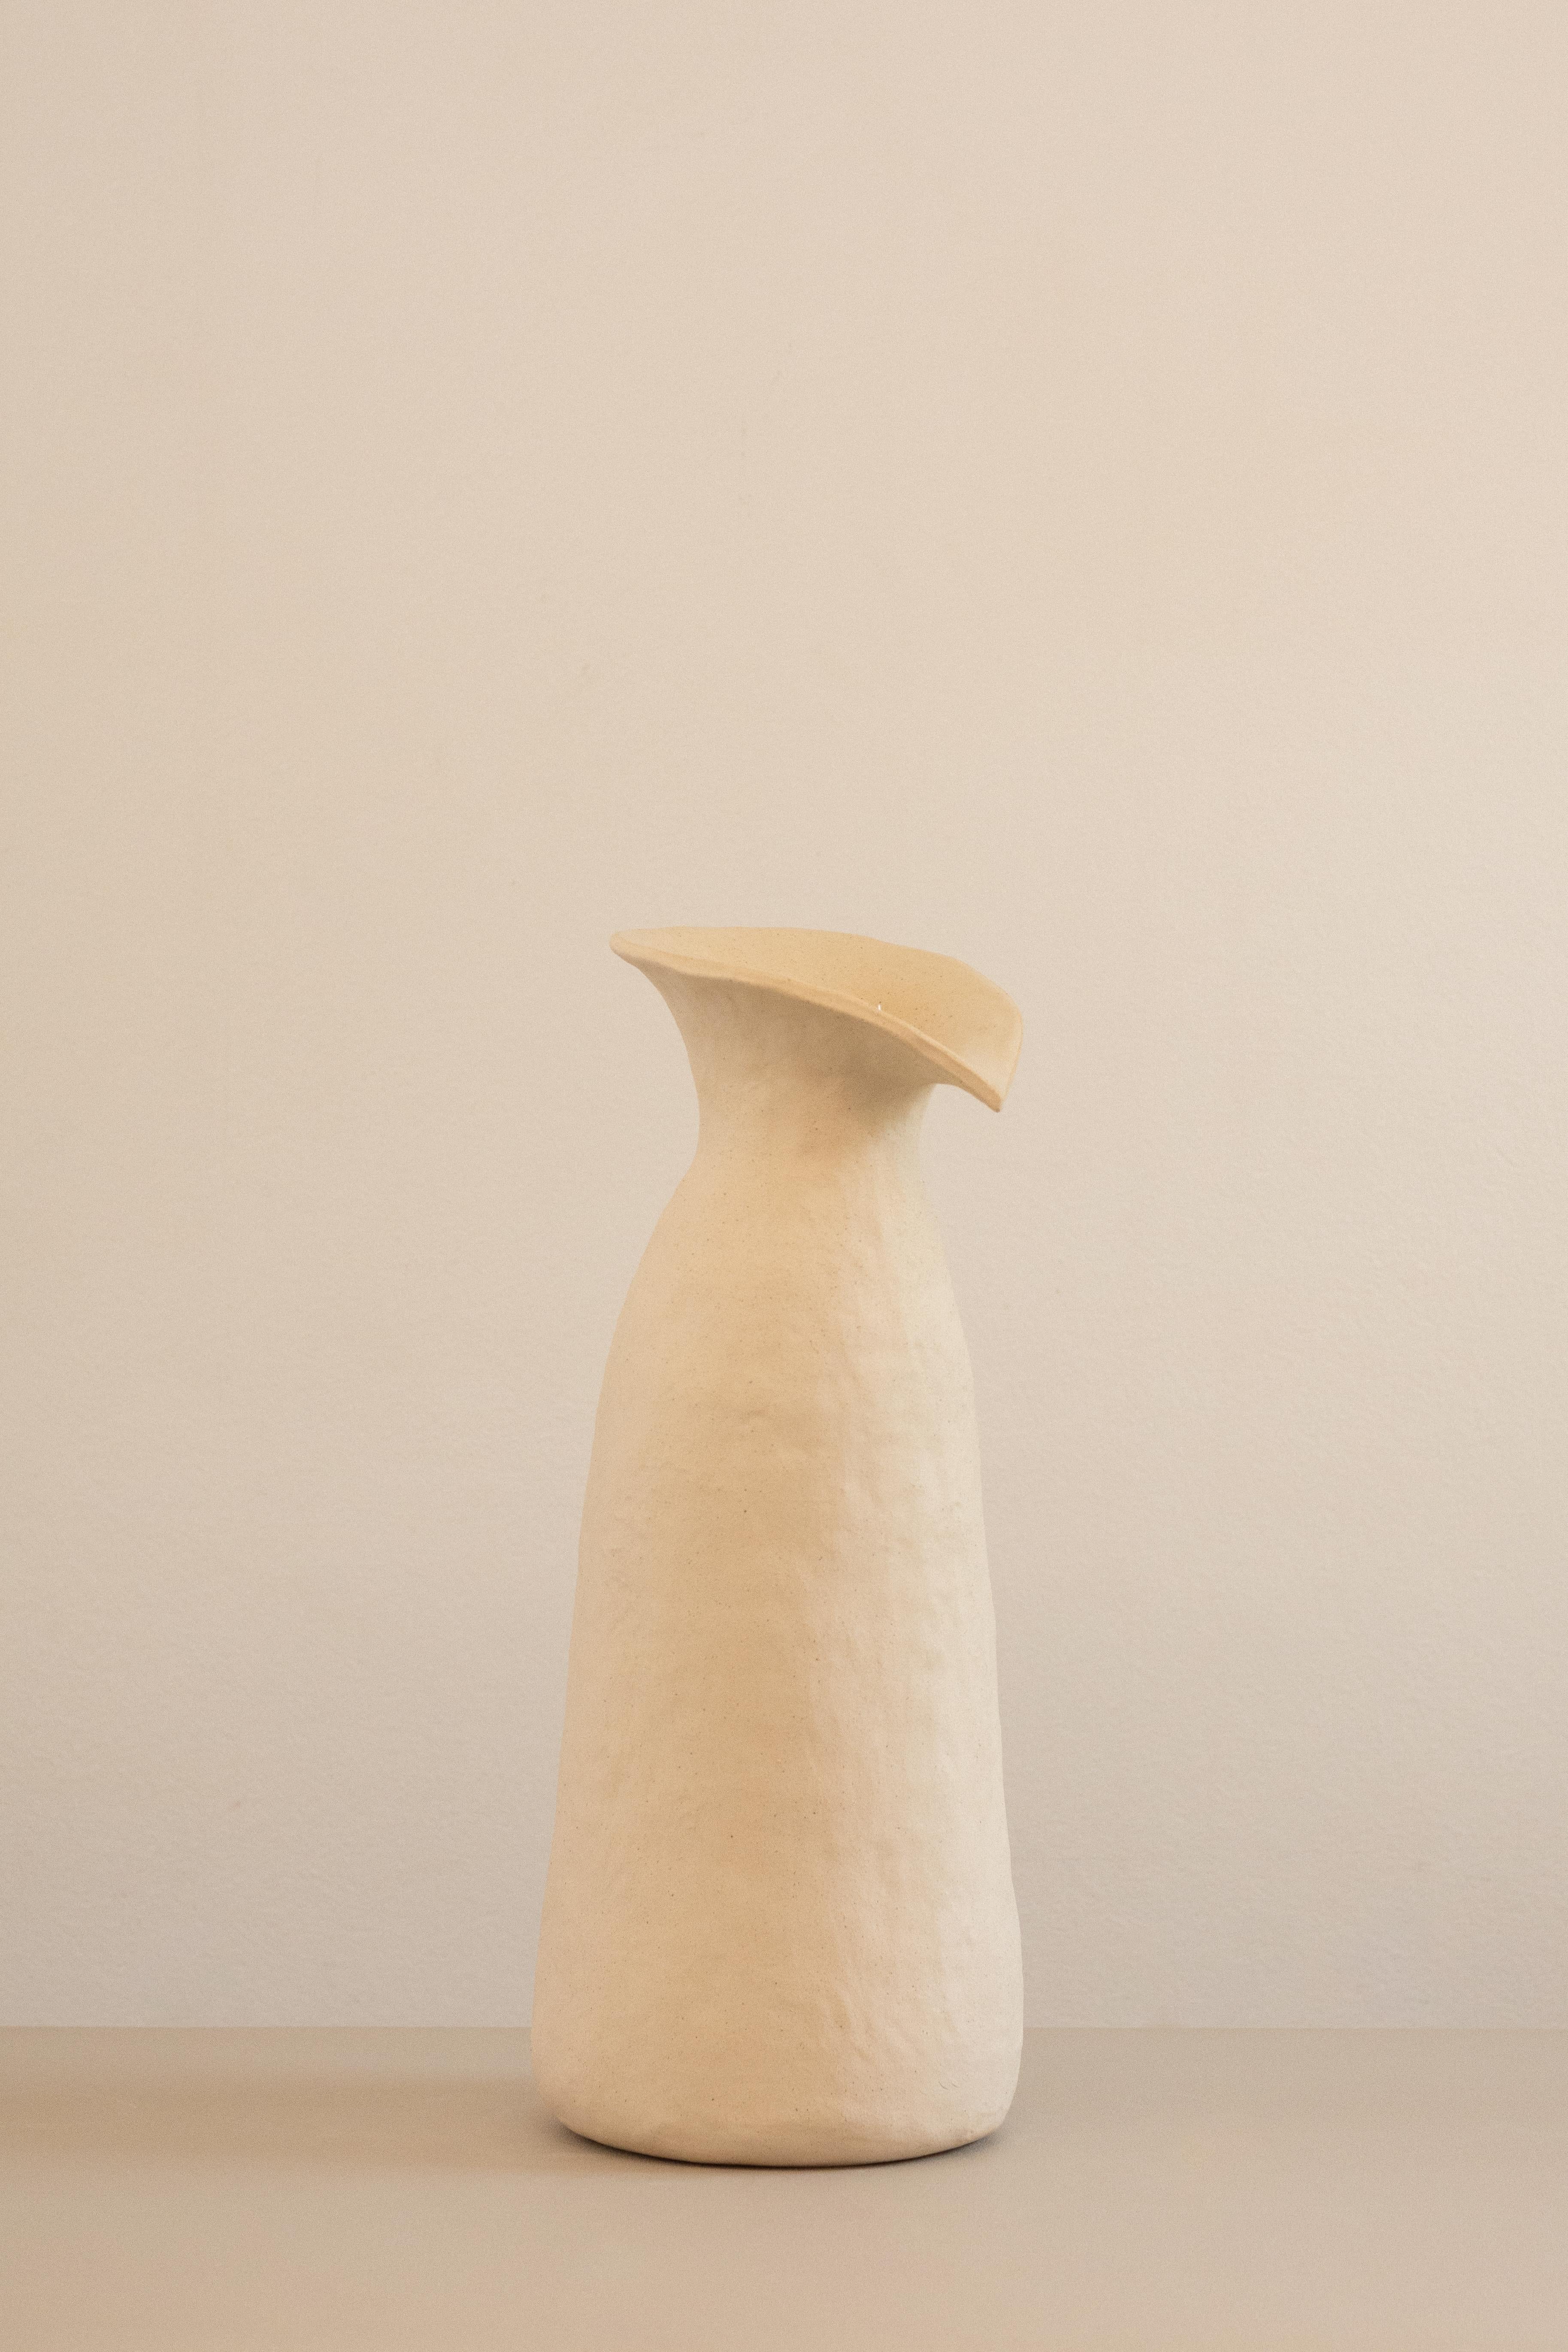 Ce vase fait partie de la série Rupa, une collection de pièces développées sans l'utilisation de moules. Chaque pièce exprime les contours et les textures imprimés par les mains de l'artiste, ce qui donne lieu à des créations aux formes intrigantes